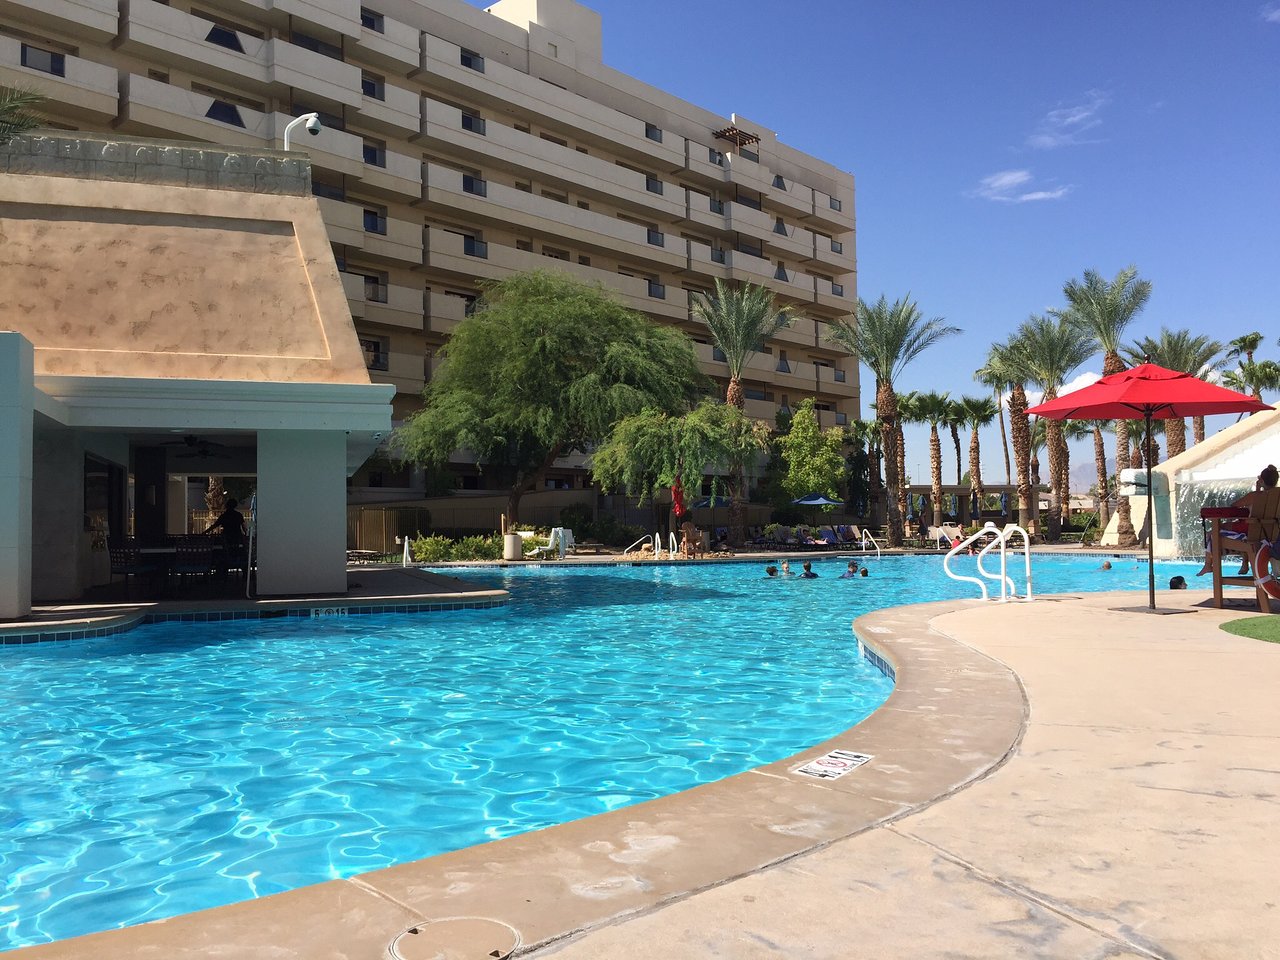 Cancun Resort at Las Vegas Pool Outside